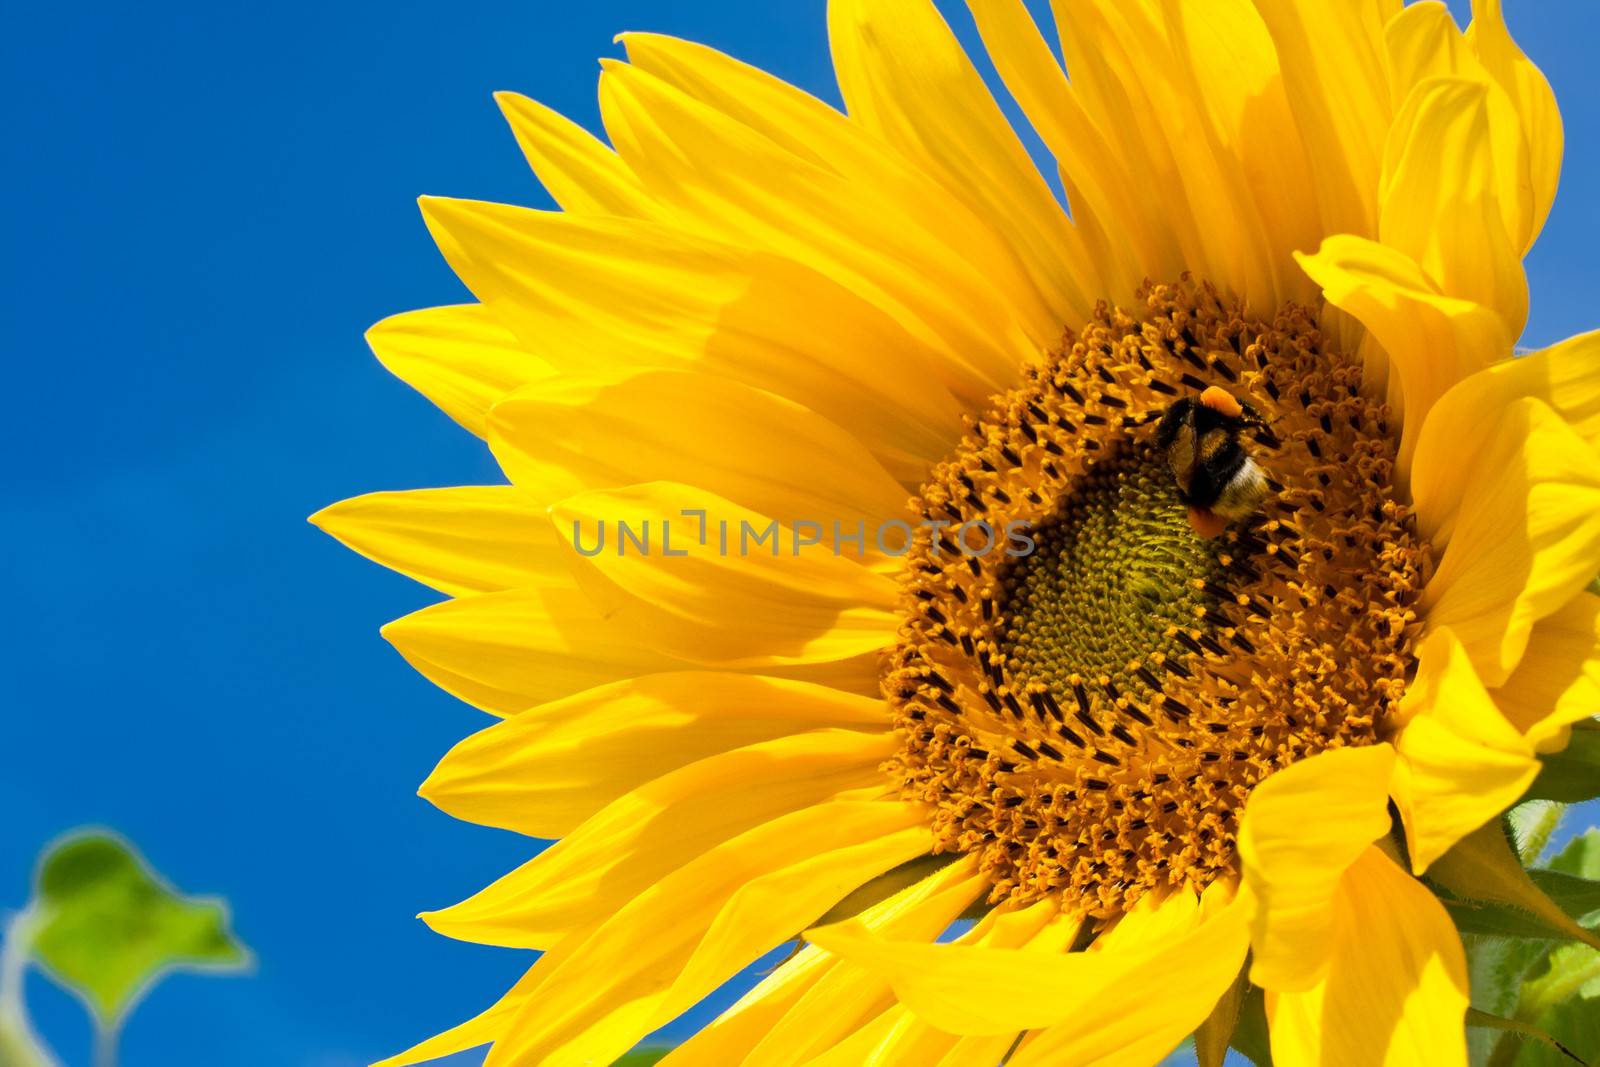 Sunflower by sailorr